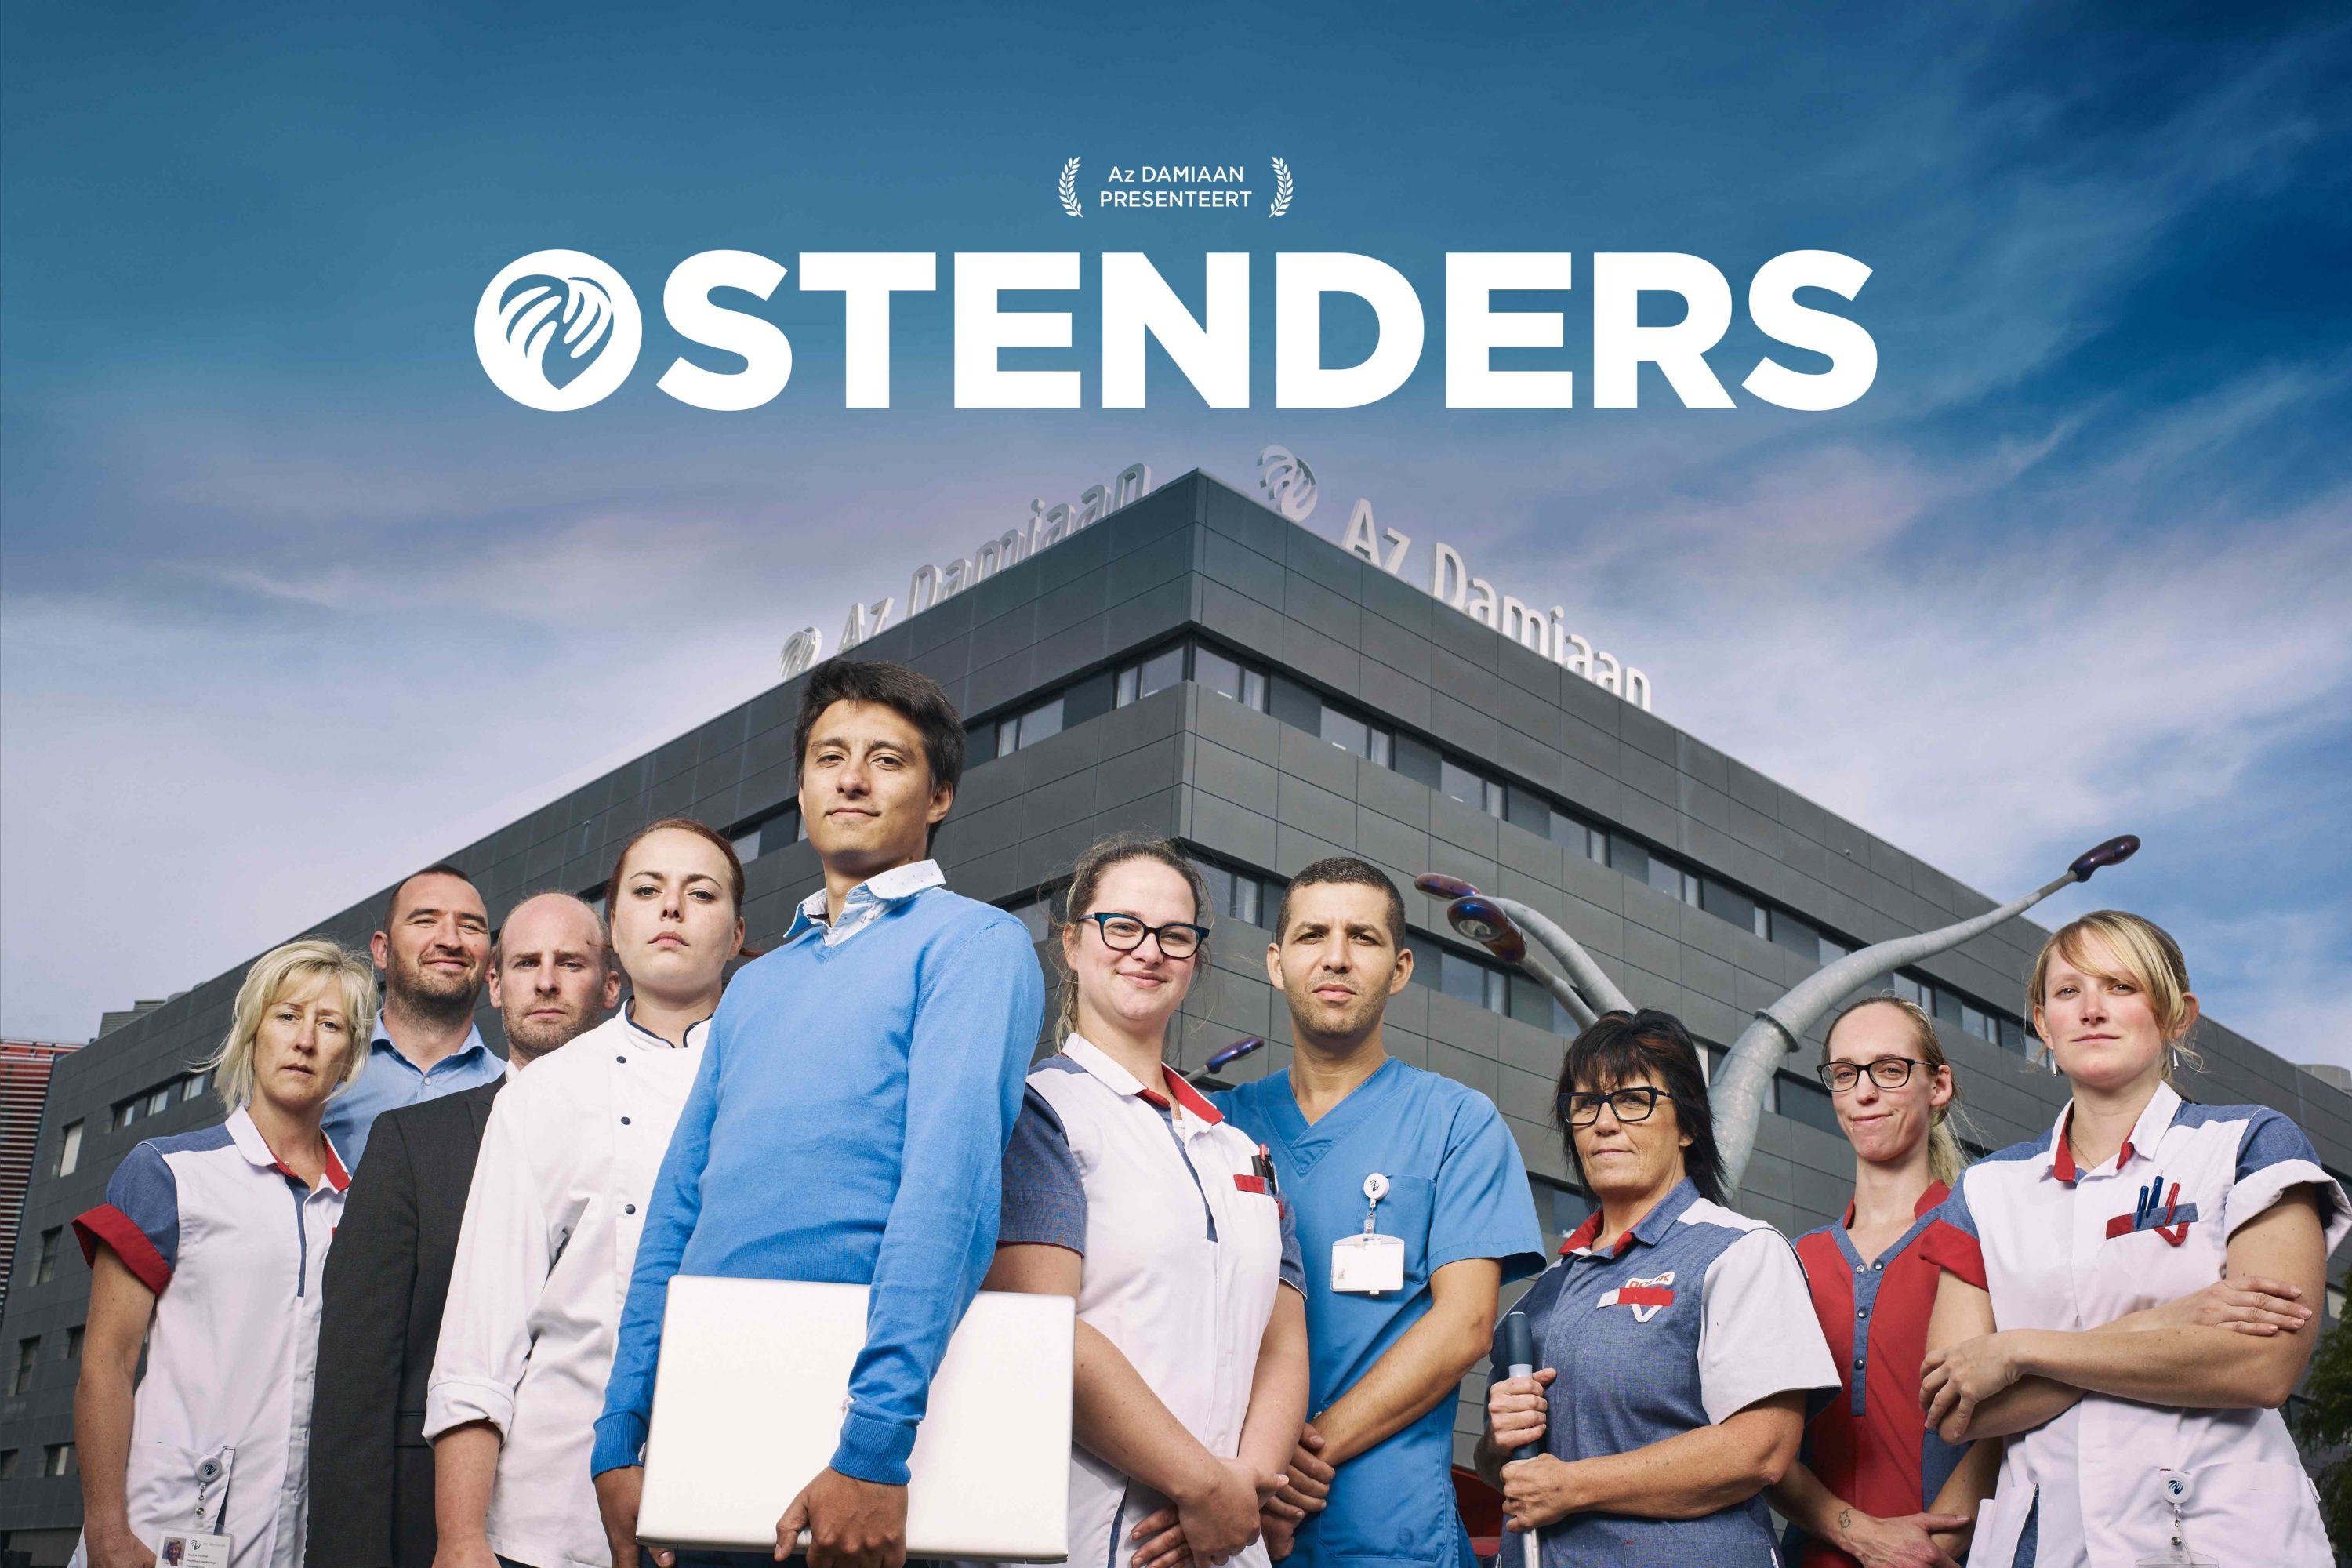 werknemers van AZ Damiaan in beeld voor de employer branding campagne van Ostenders